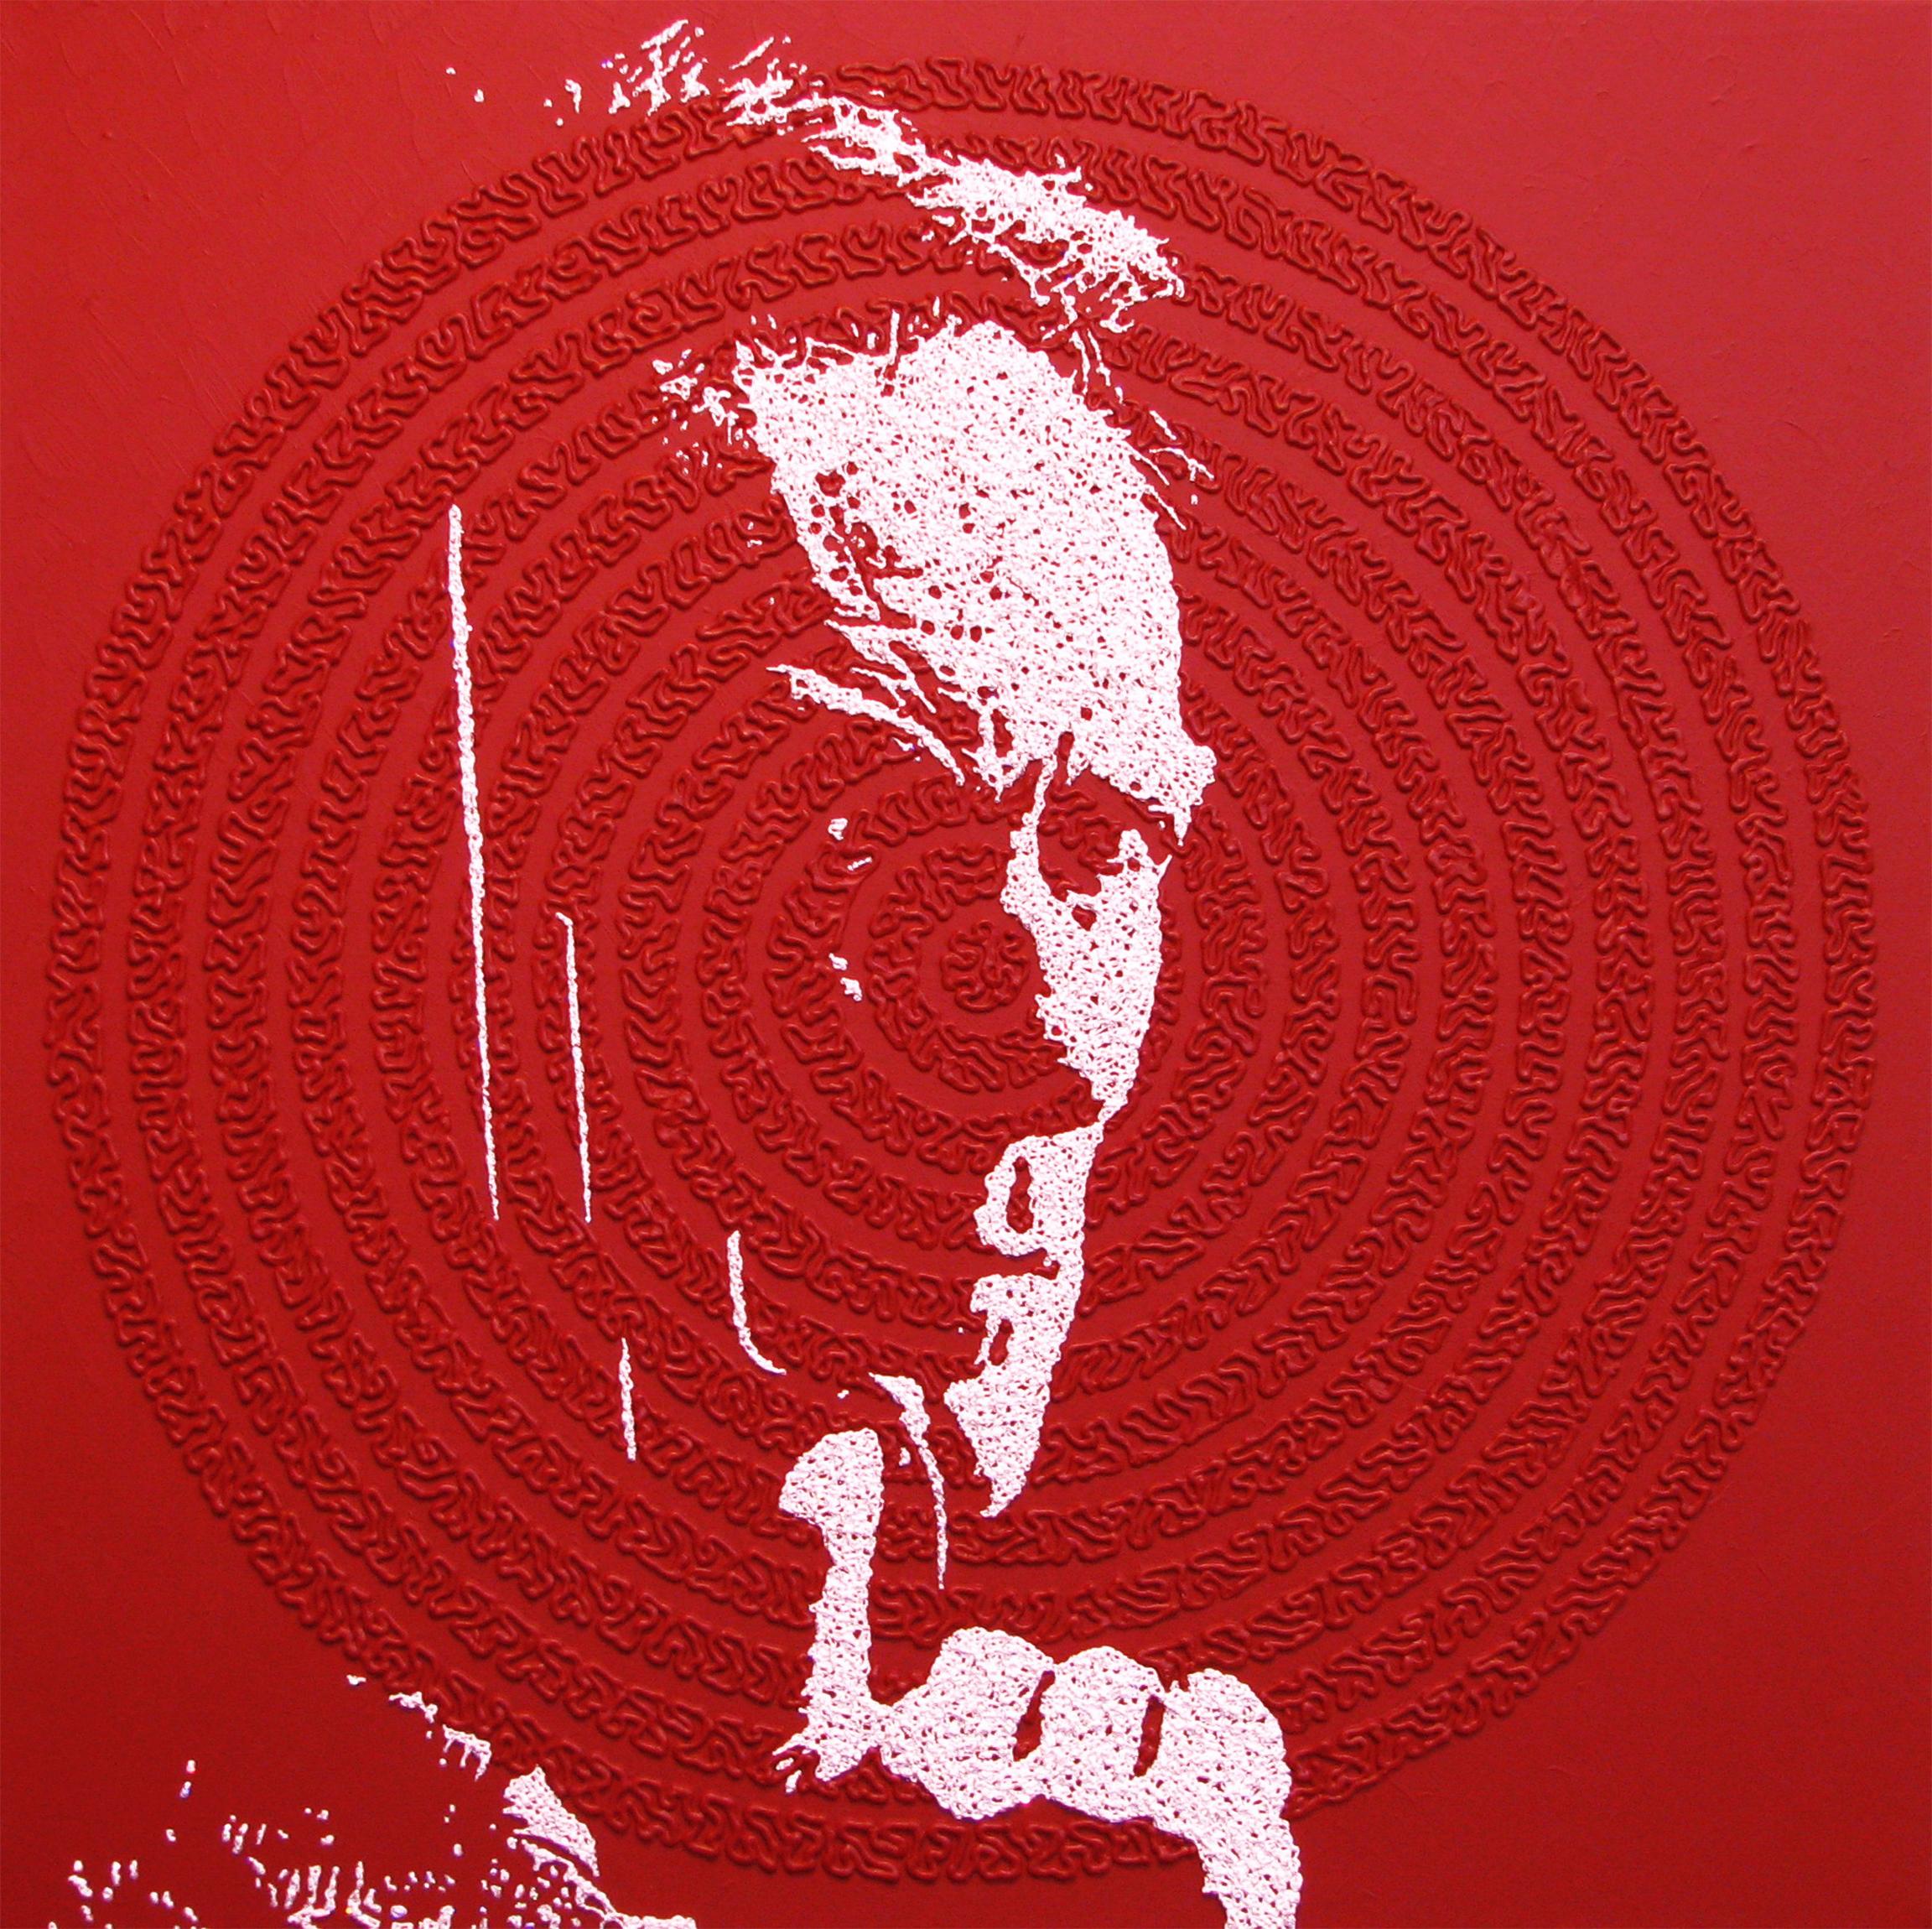 Clint - portrait icon painting 2